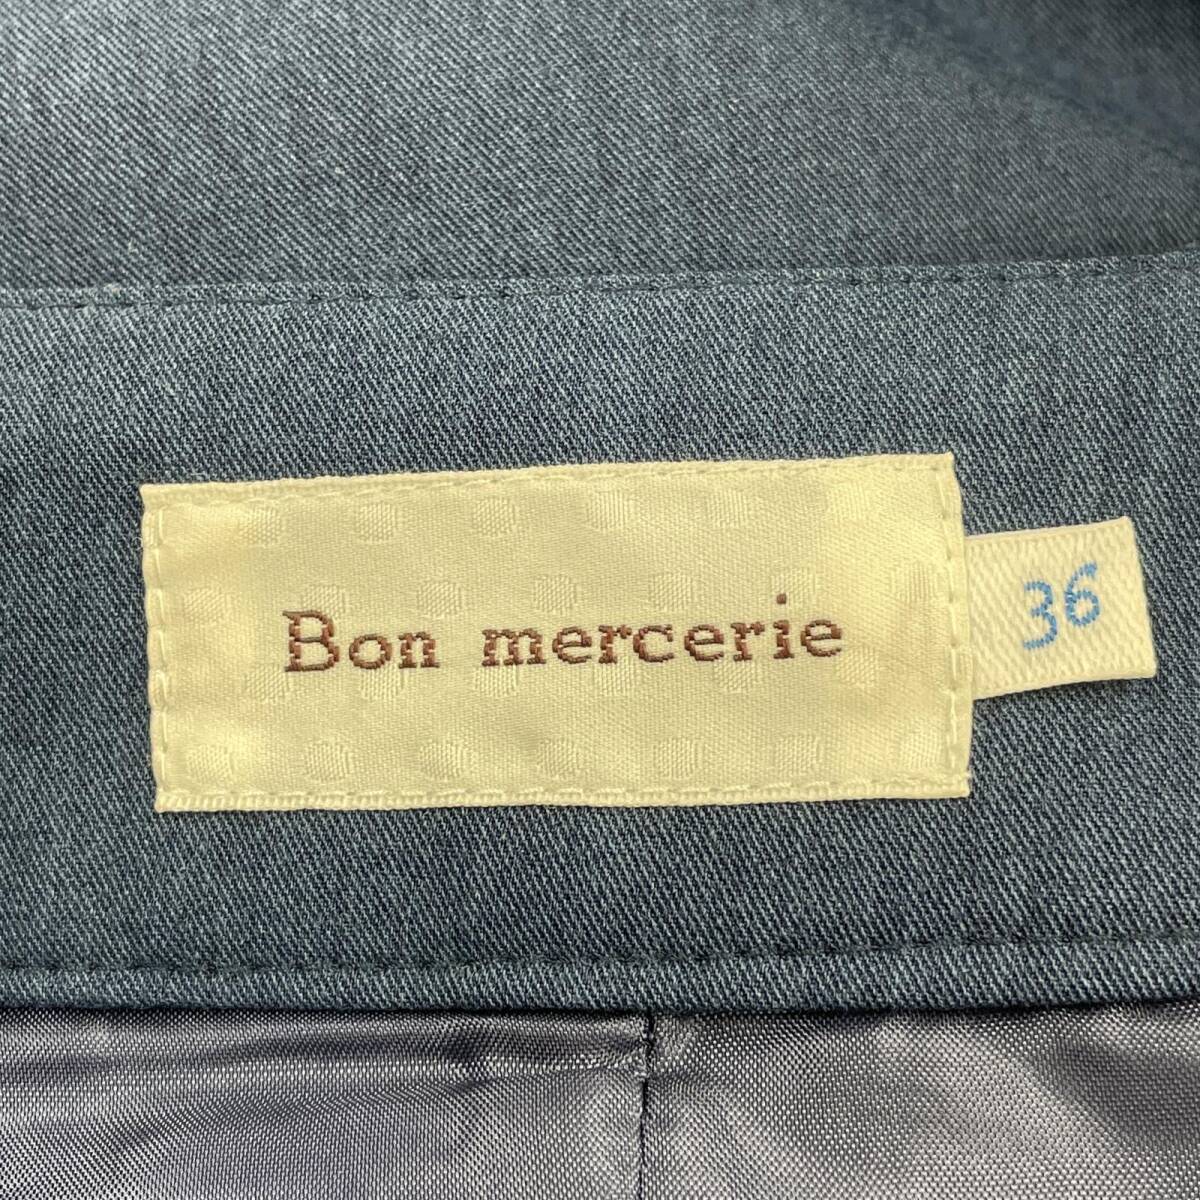 Bon mercerie ボンメルスリー ワイド パンツ size36/青系 レディース_画像5